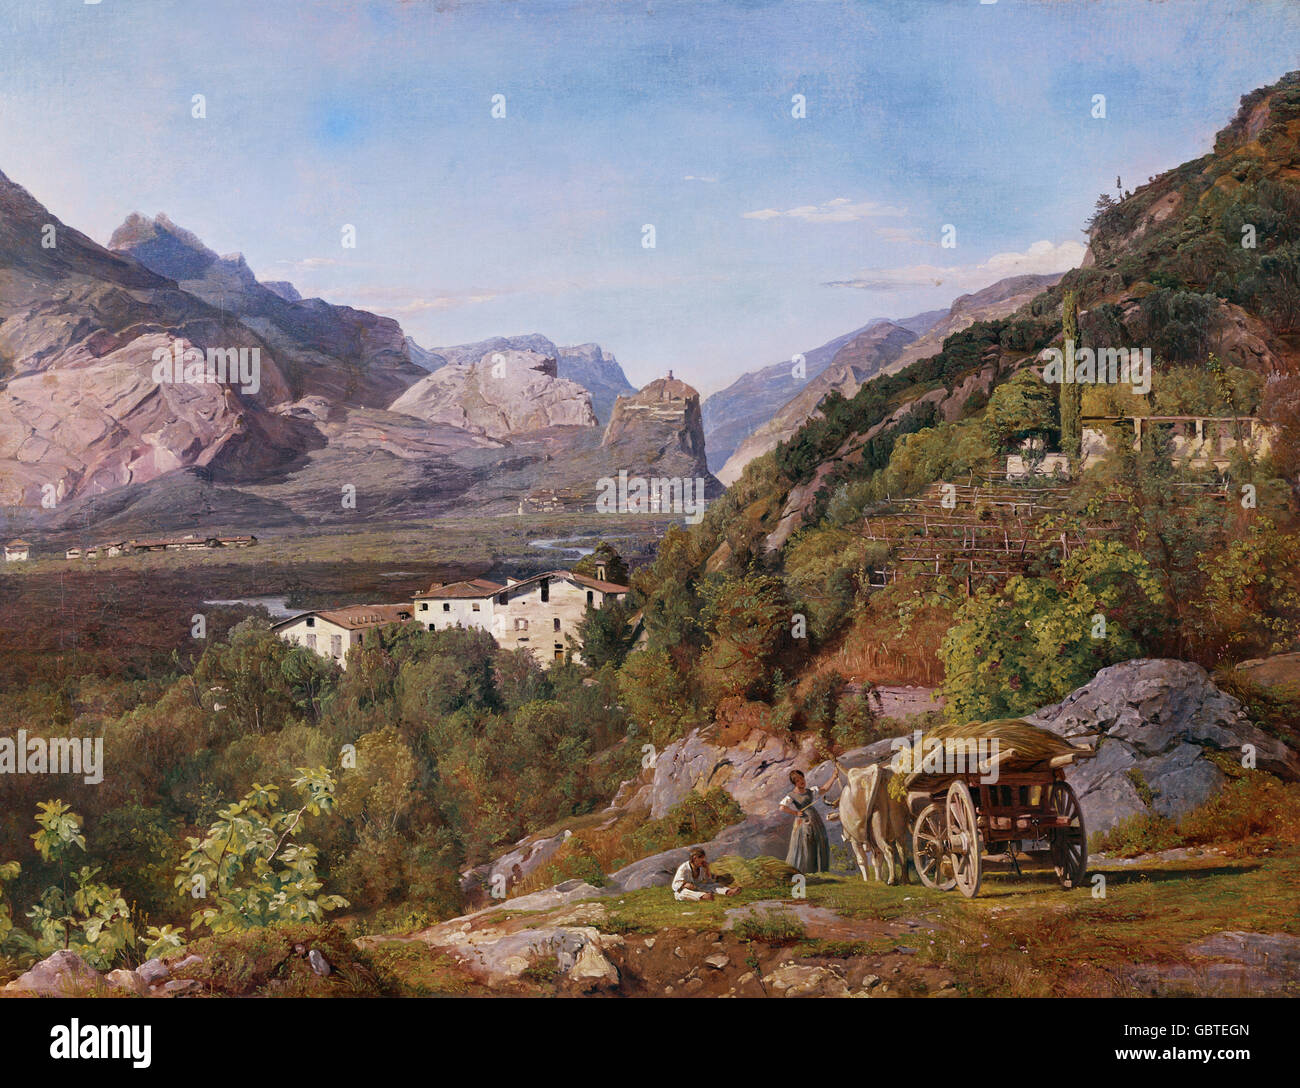 Bildende Kunst, Waldmueller, Ferdinand Georg (1793-1865), Malerei, "Blick Auf Arco" (Ansicht von Arco), 1841, Öl auf Leinwand, 44,5 cm x 58 cm, Stiftung Reinhart, Winterthur, Schweiz Stockfoto